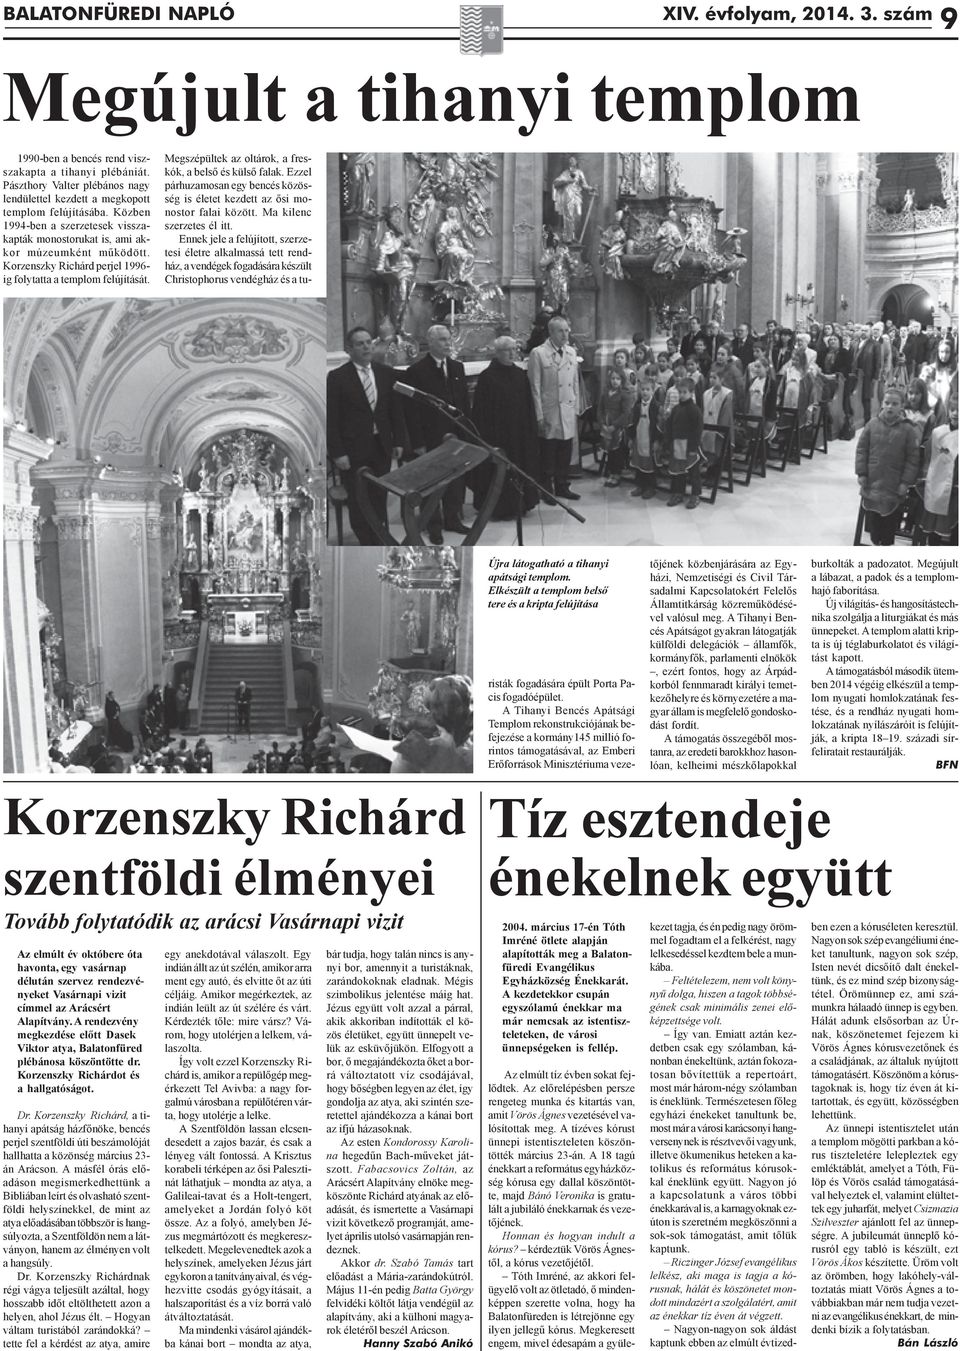 Korzenszky Richárd perjel 1996- ig folytatta a templom felújítását. Újra látogatható a tihanyi apátsági templom.